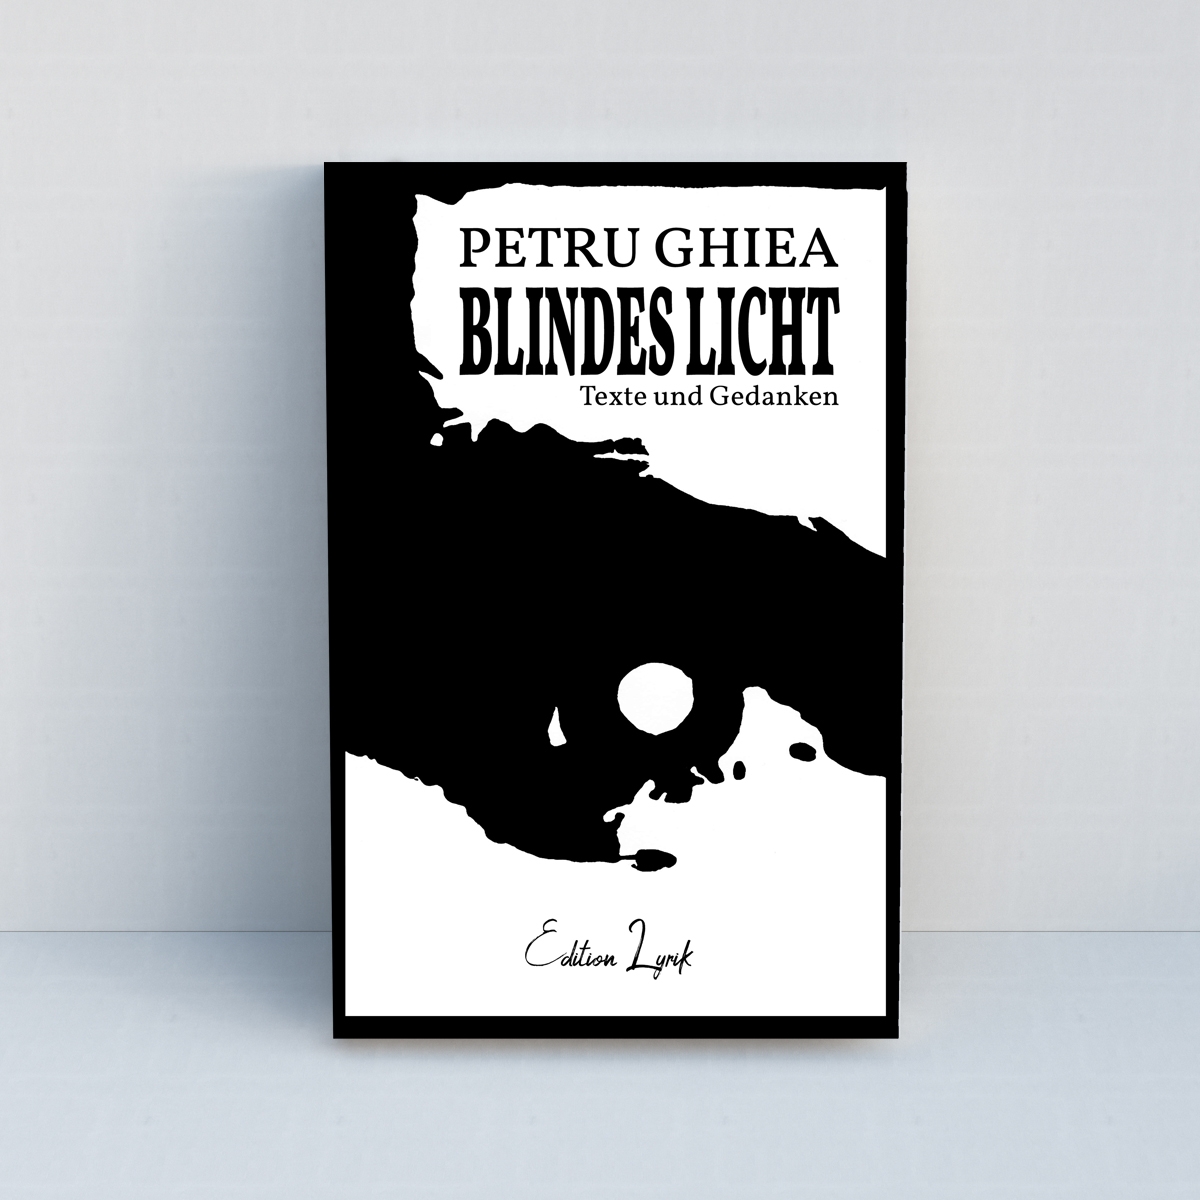 Blindes Licht: Texte und Gedanken von Petru Ghiea - Standard Edition